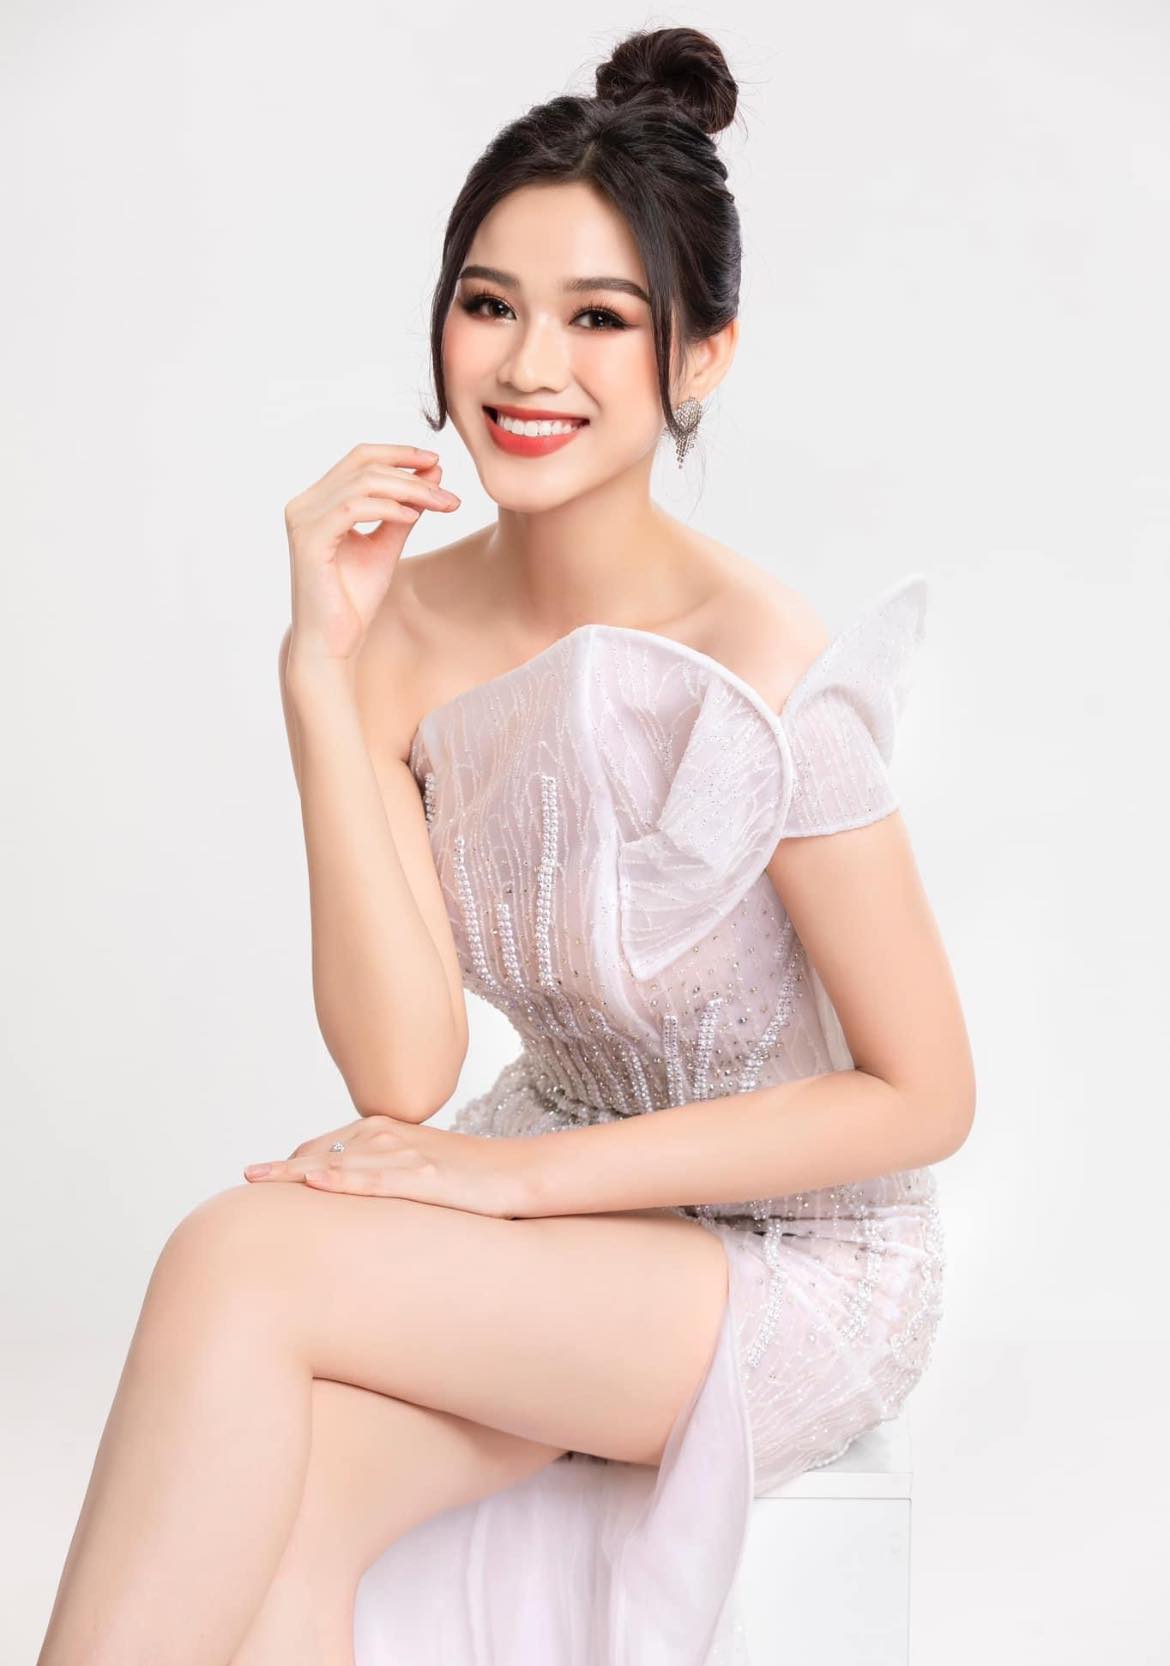 Đụng ai không đụng, Hoa hậu Đỗ Thị Hà cứ chọn Ngọc Trinh mà mặc giống đồ, kém 12 tuổi liệu có đẹp hơn?